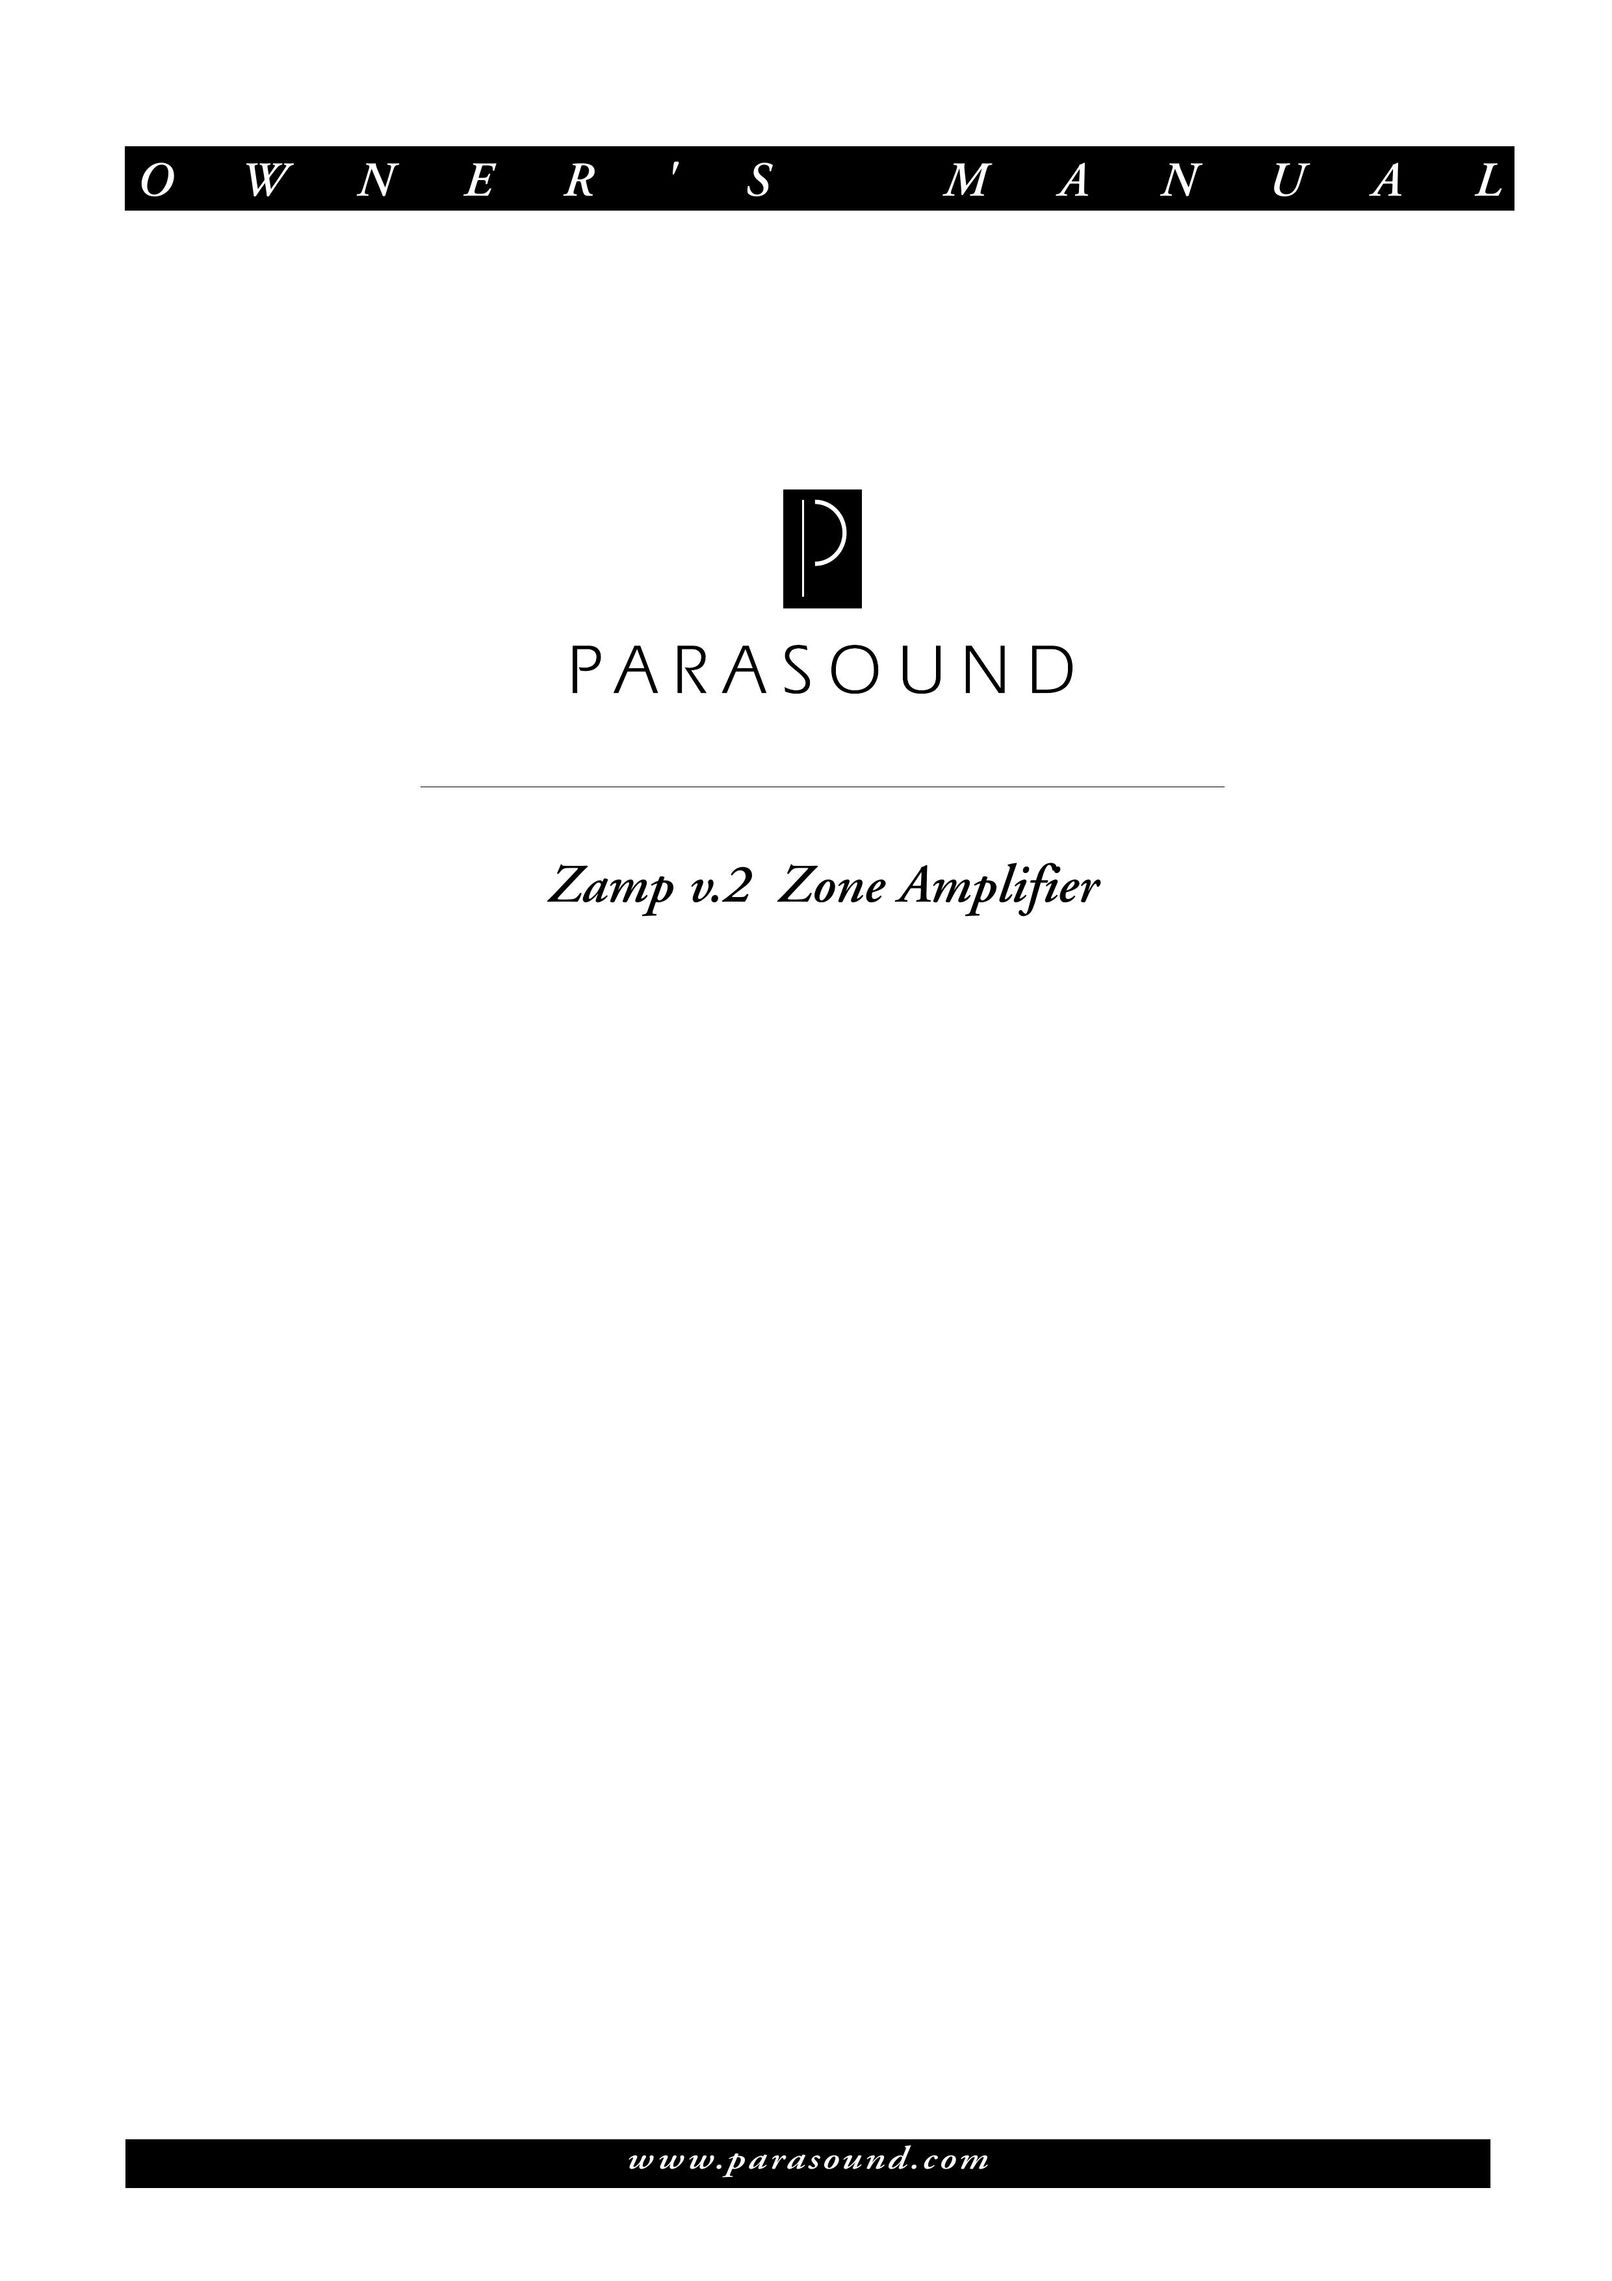 Parasound Zamp v.2 Stereo Amplifier User Manual